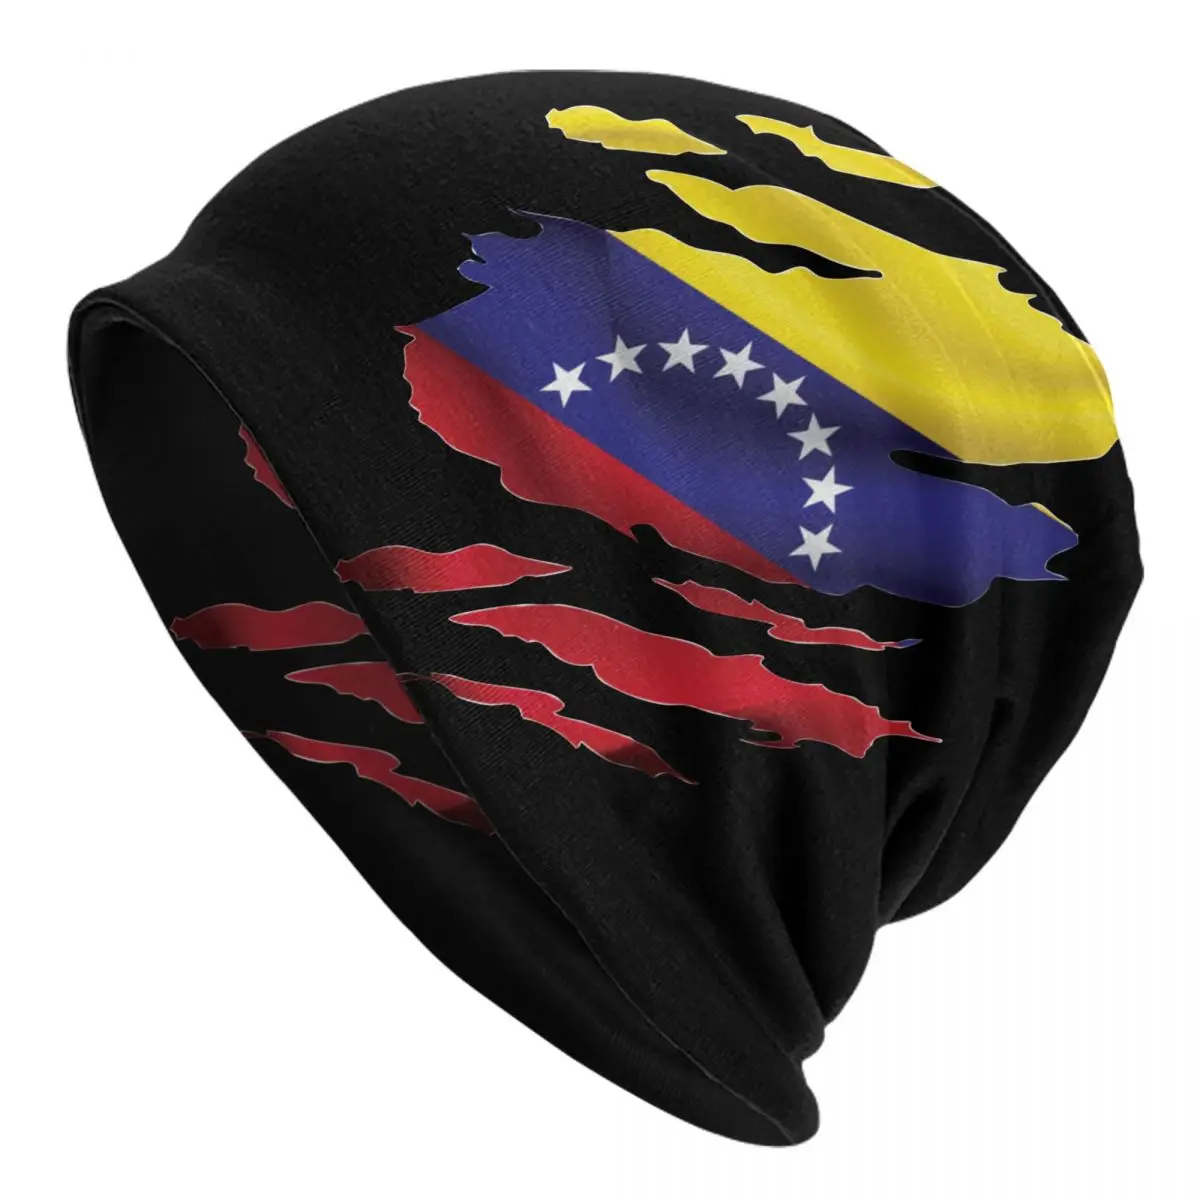 

Шляпа Венесуэла с рваным флагом, шапки, осенне-зимние уличные шапочки, облегающие шапки, шапки, шапки унисекс из Венесуэлы, теплая шапка двой...